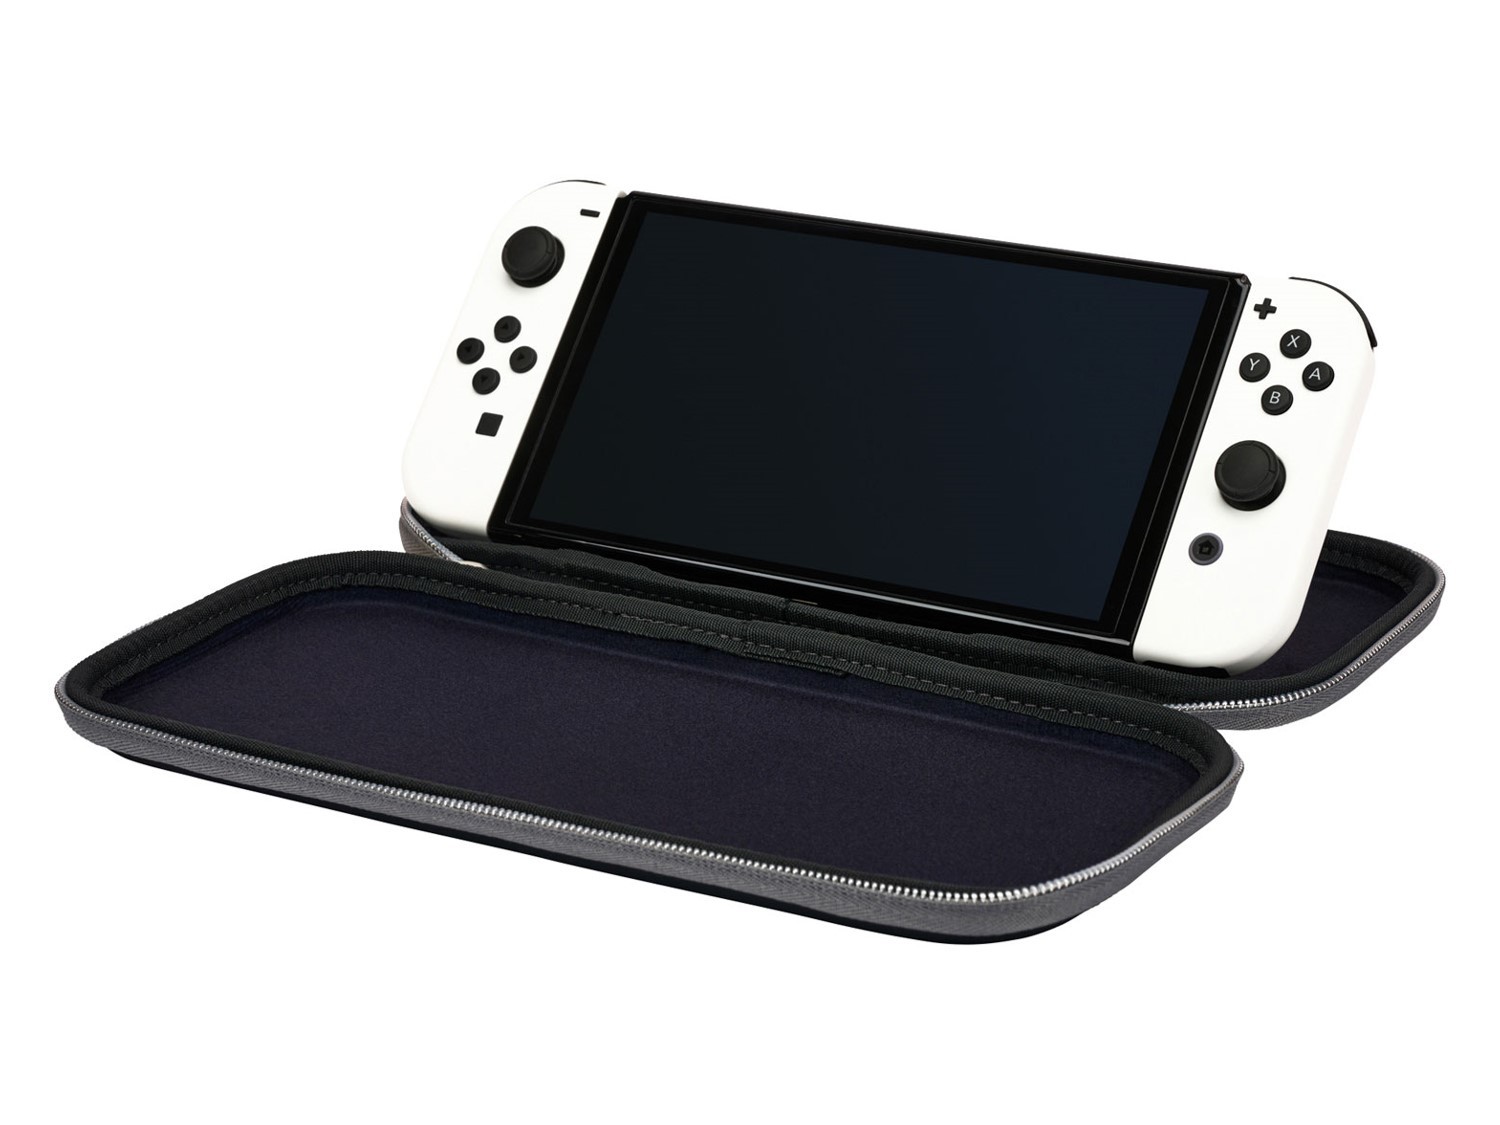 Nintendo Switch OLED Carrying Case - White/Black - Nintendo Switch Hardware - 2